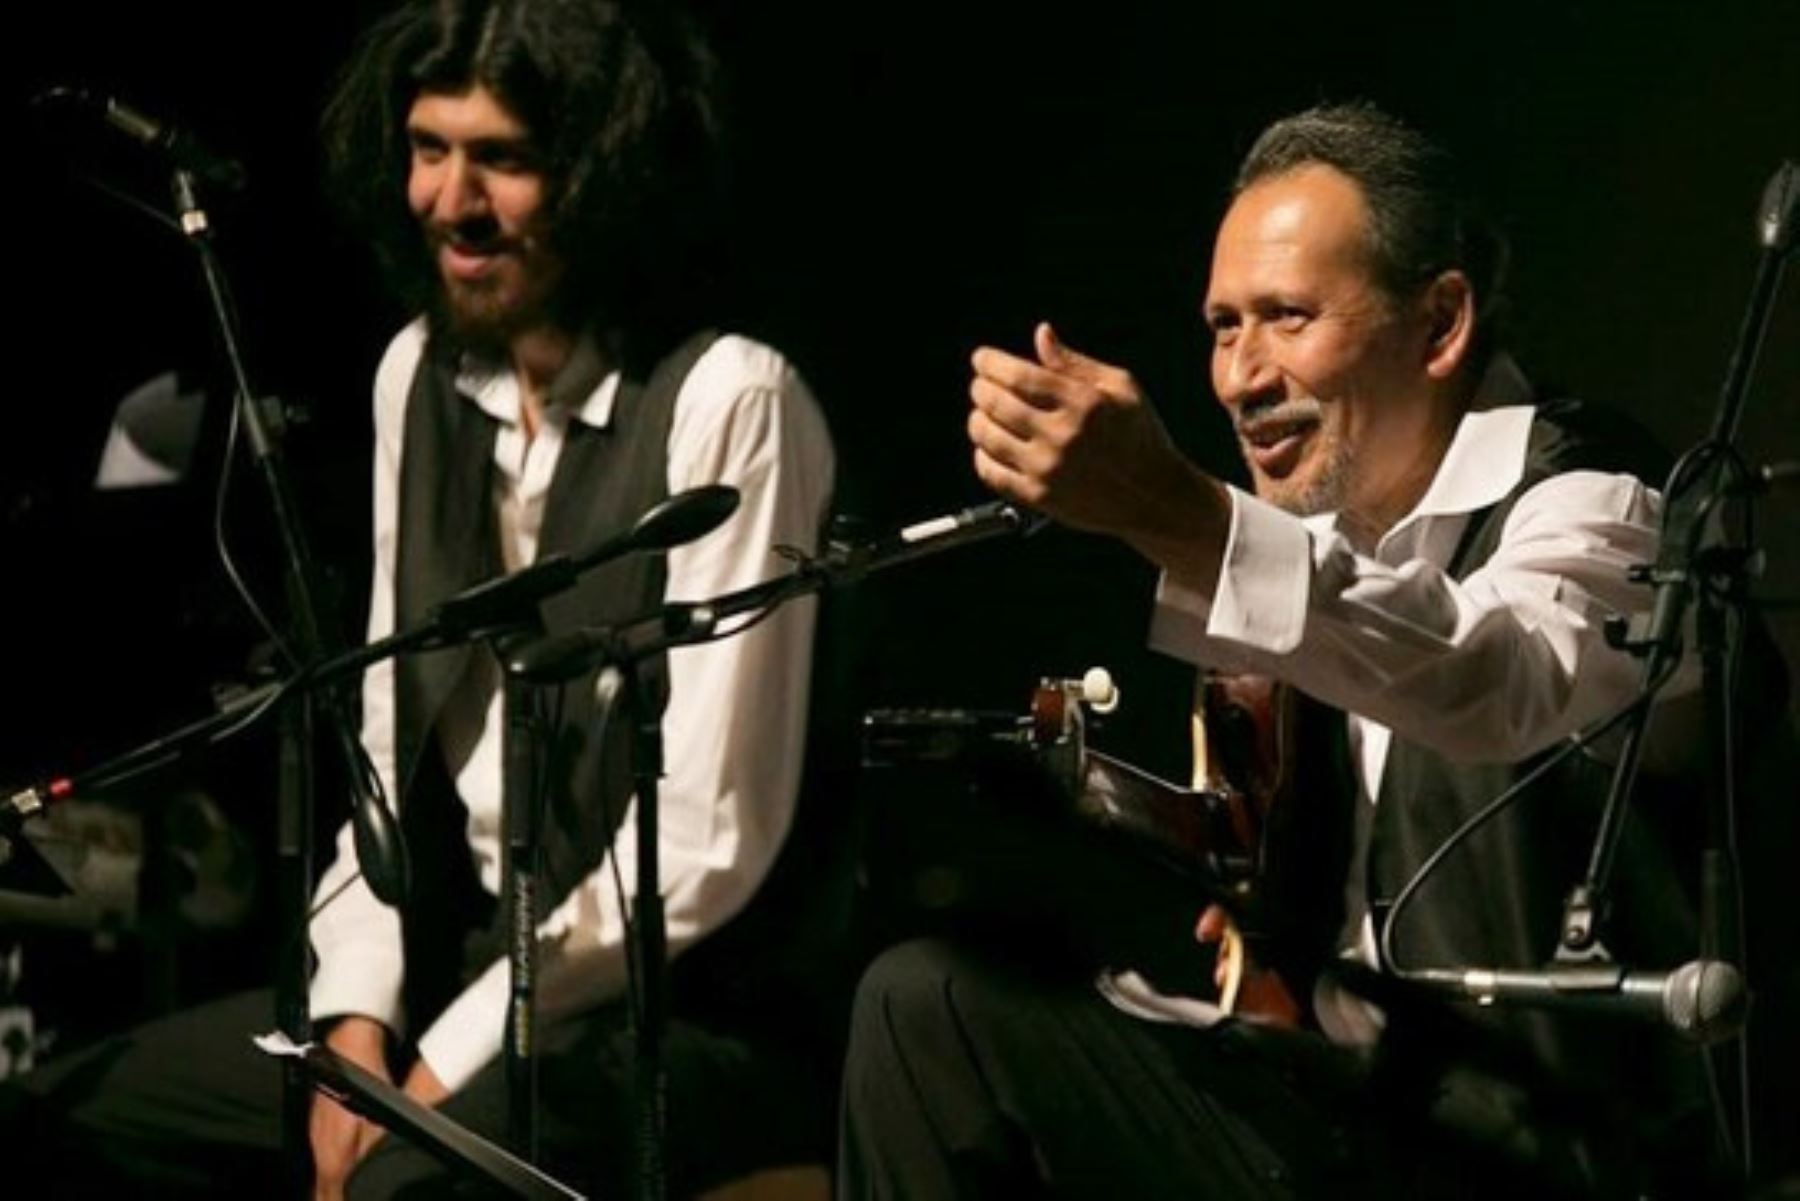 Don Víctor Meléndez, además, ha aportado con su conocimiento y trabajo a la difusión y desarrollo de diversos géneros musicales de la costa peruana.